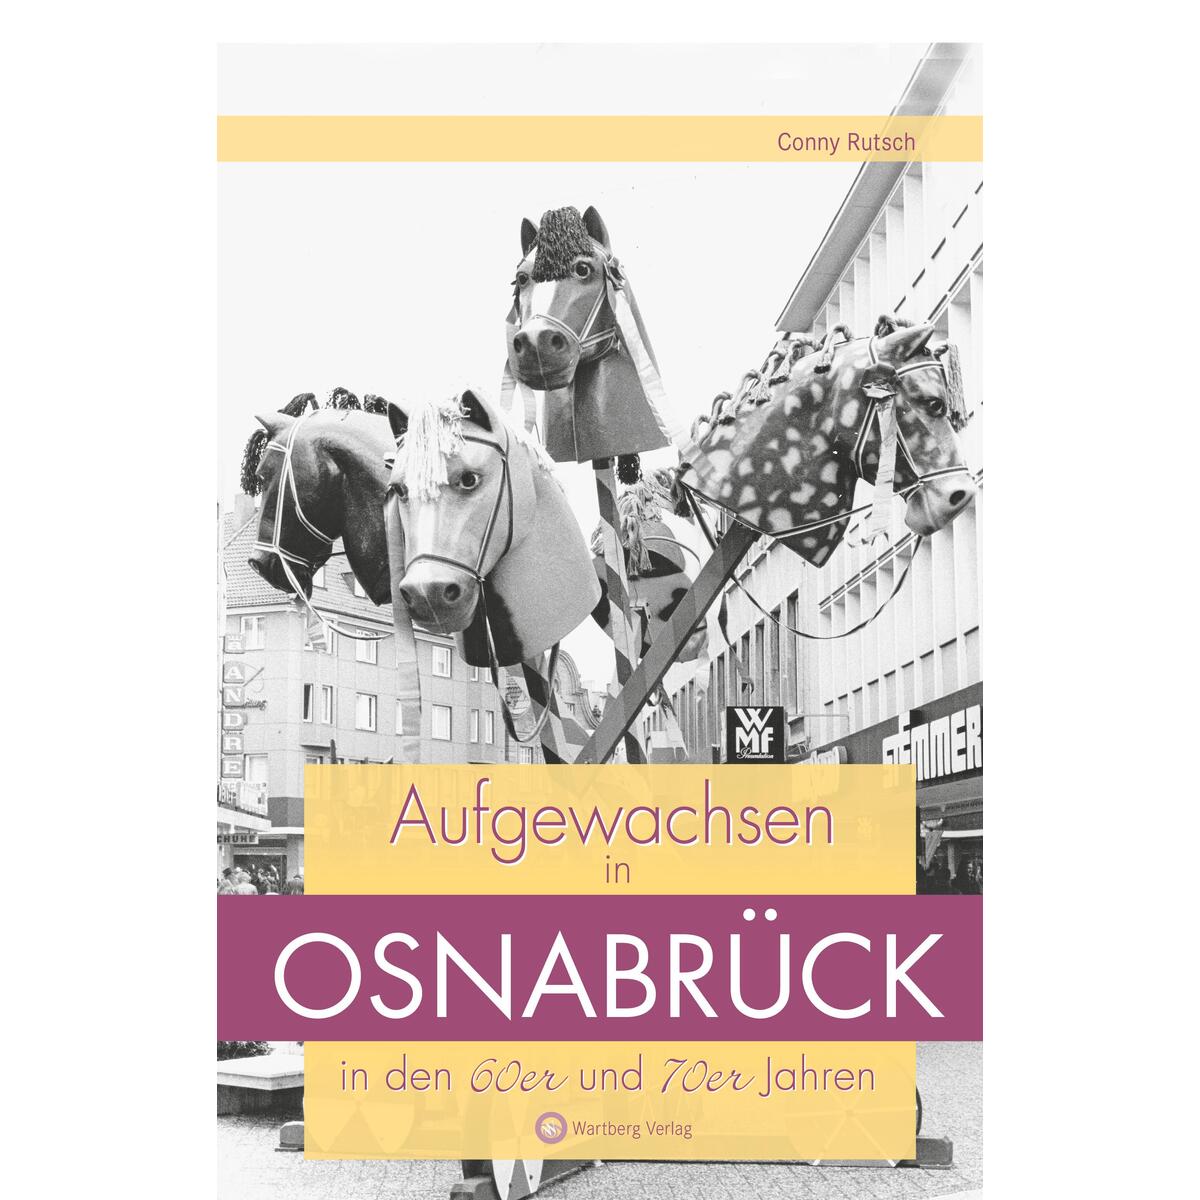 Aufgewachsen in Osnabrück in den 60er und 70er Jahren von Wartberg Verlag